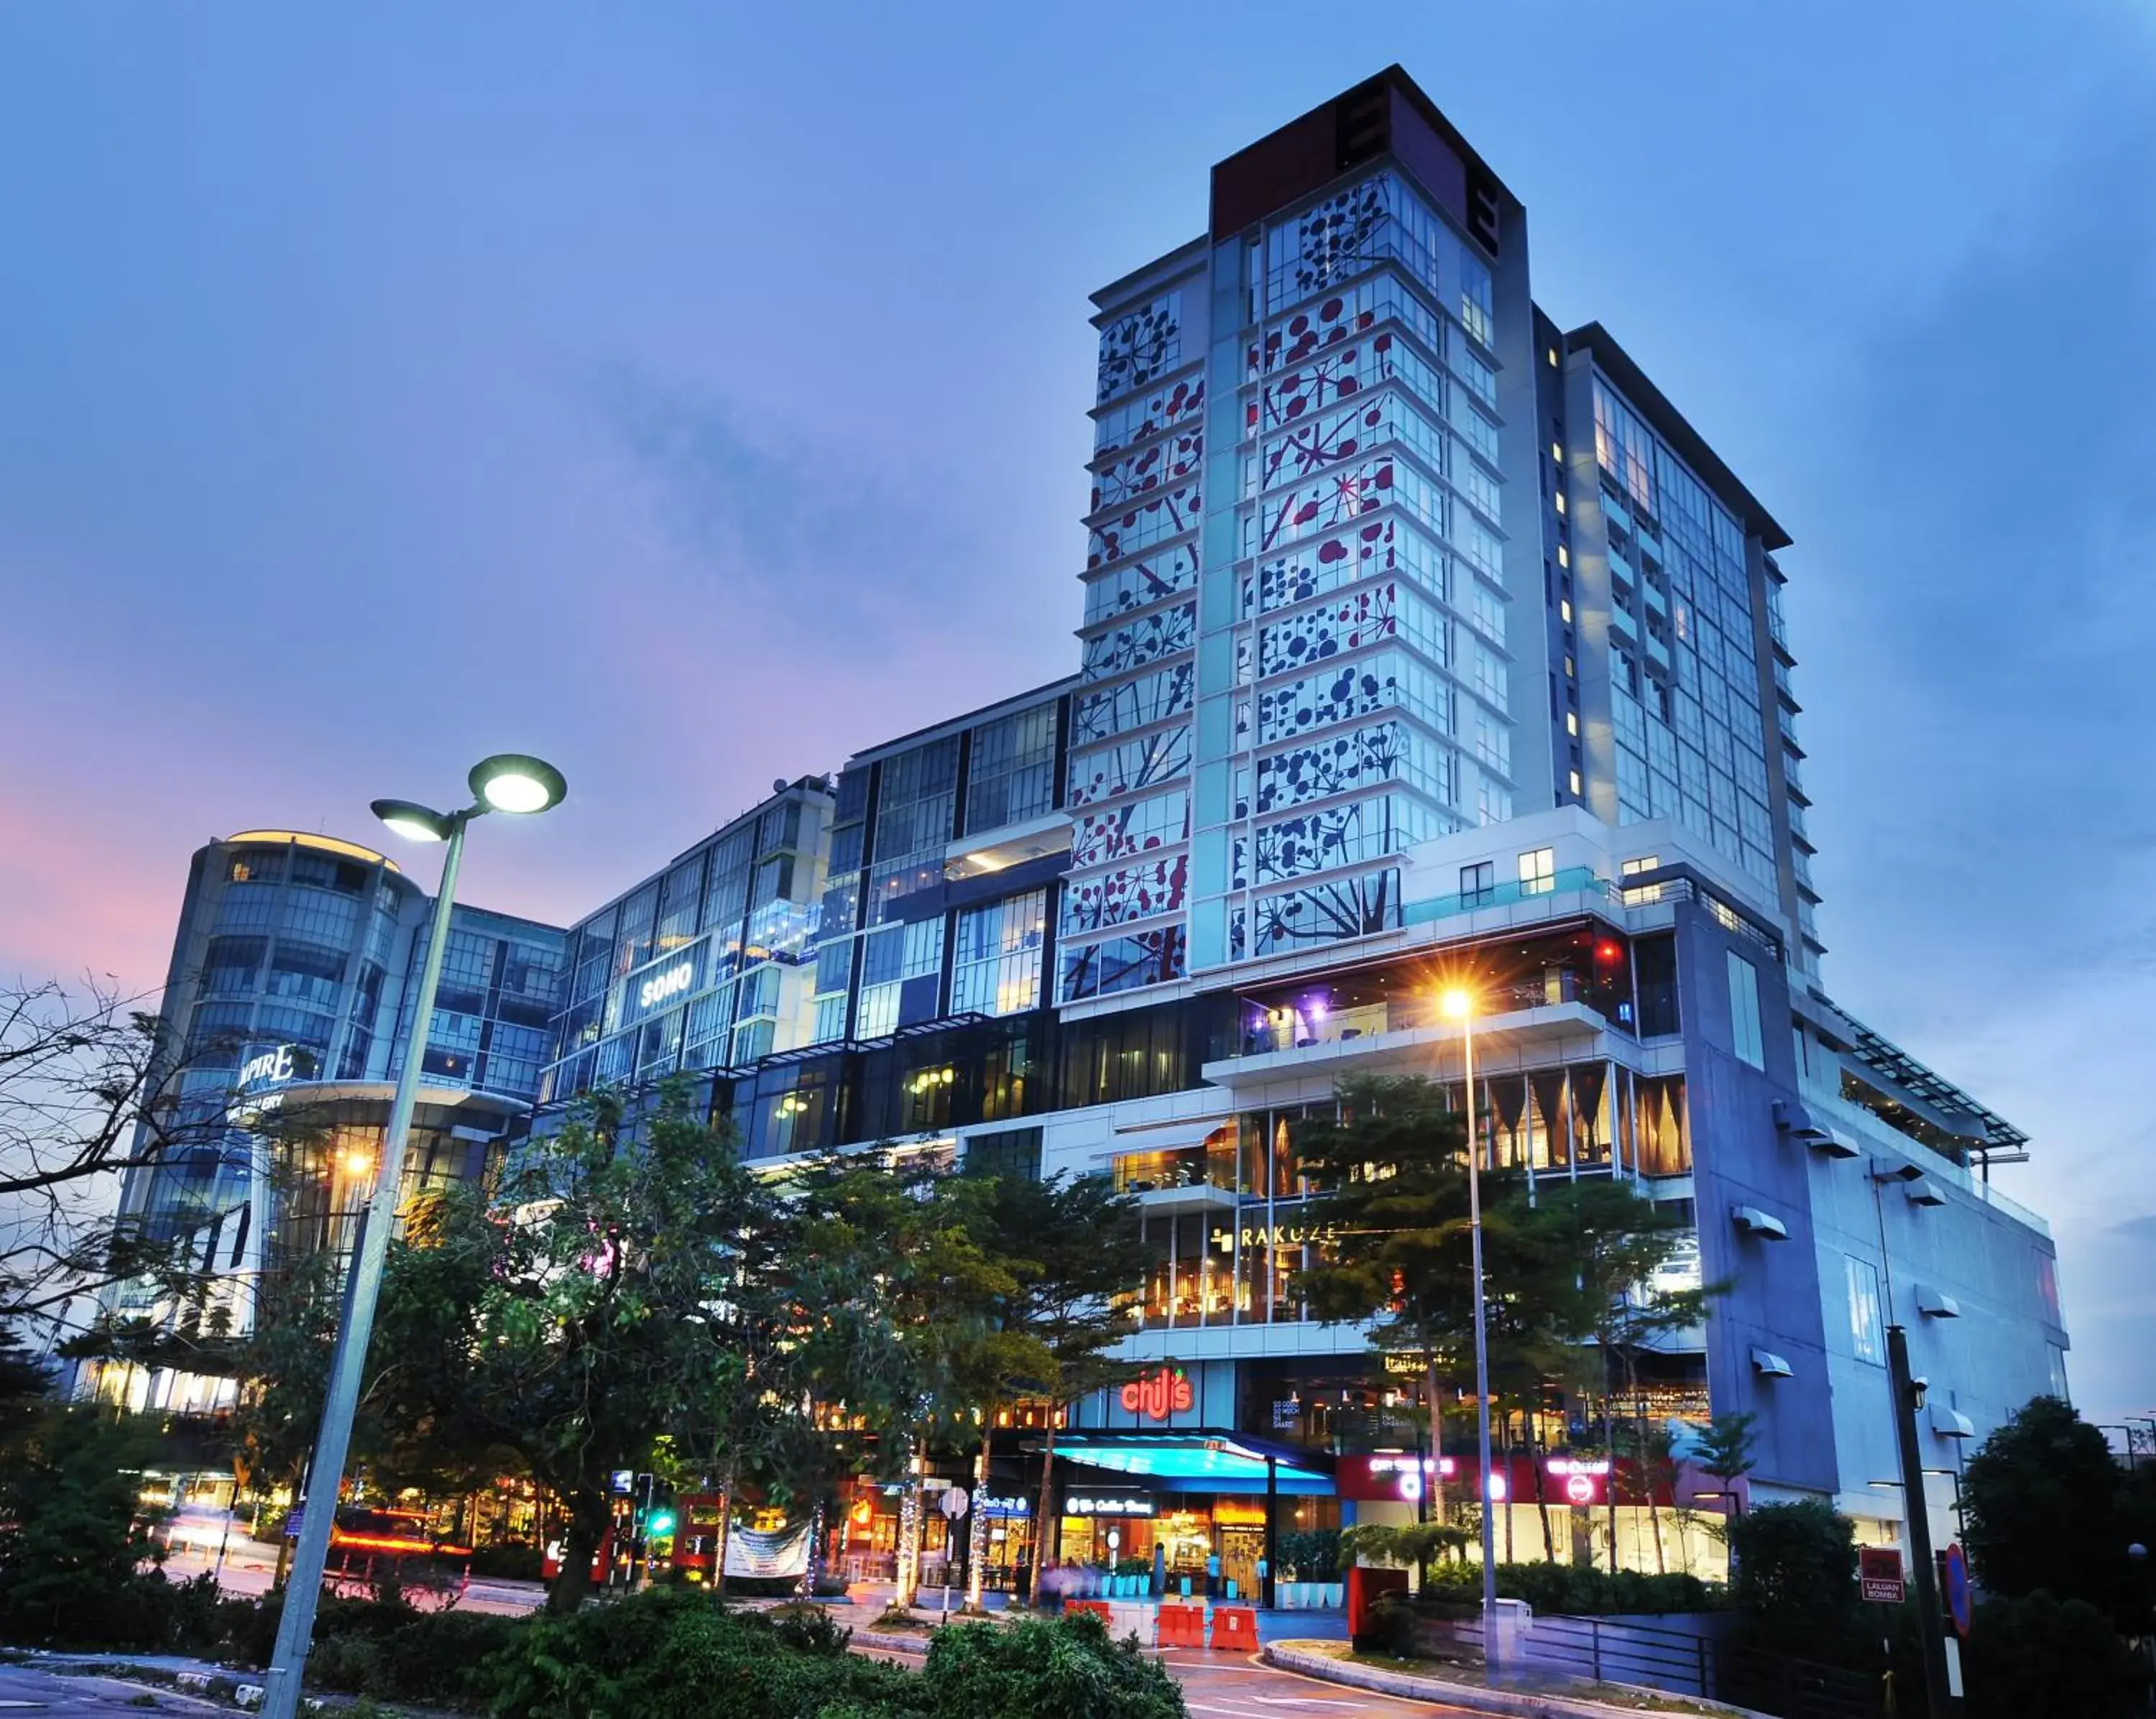 Facade/entrance in Empire Hotel Subang